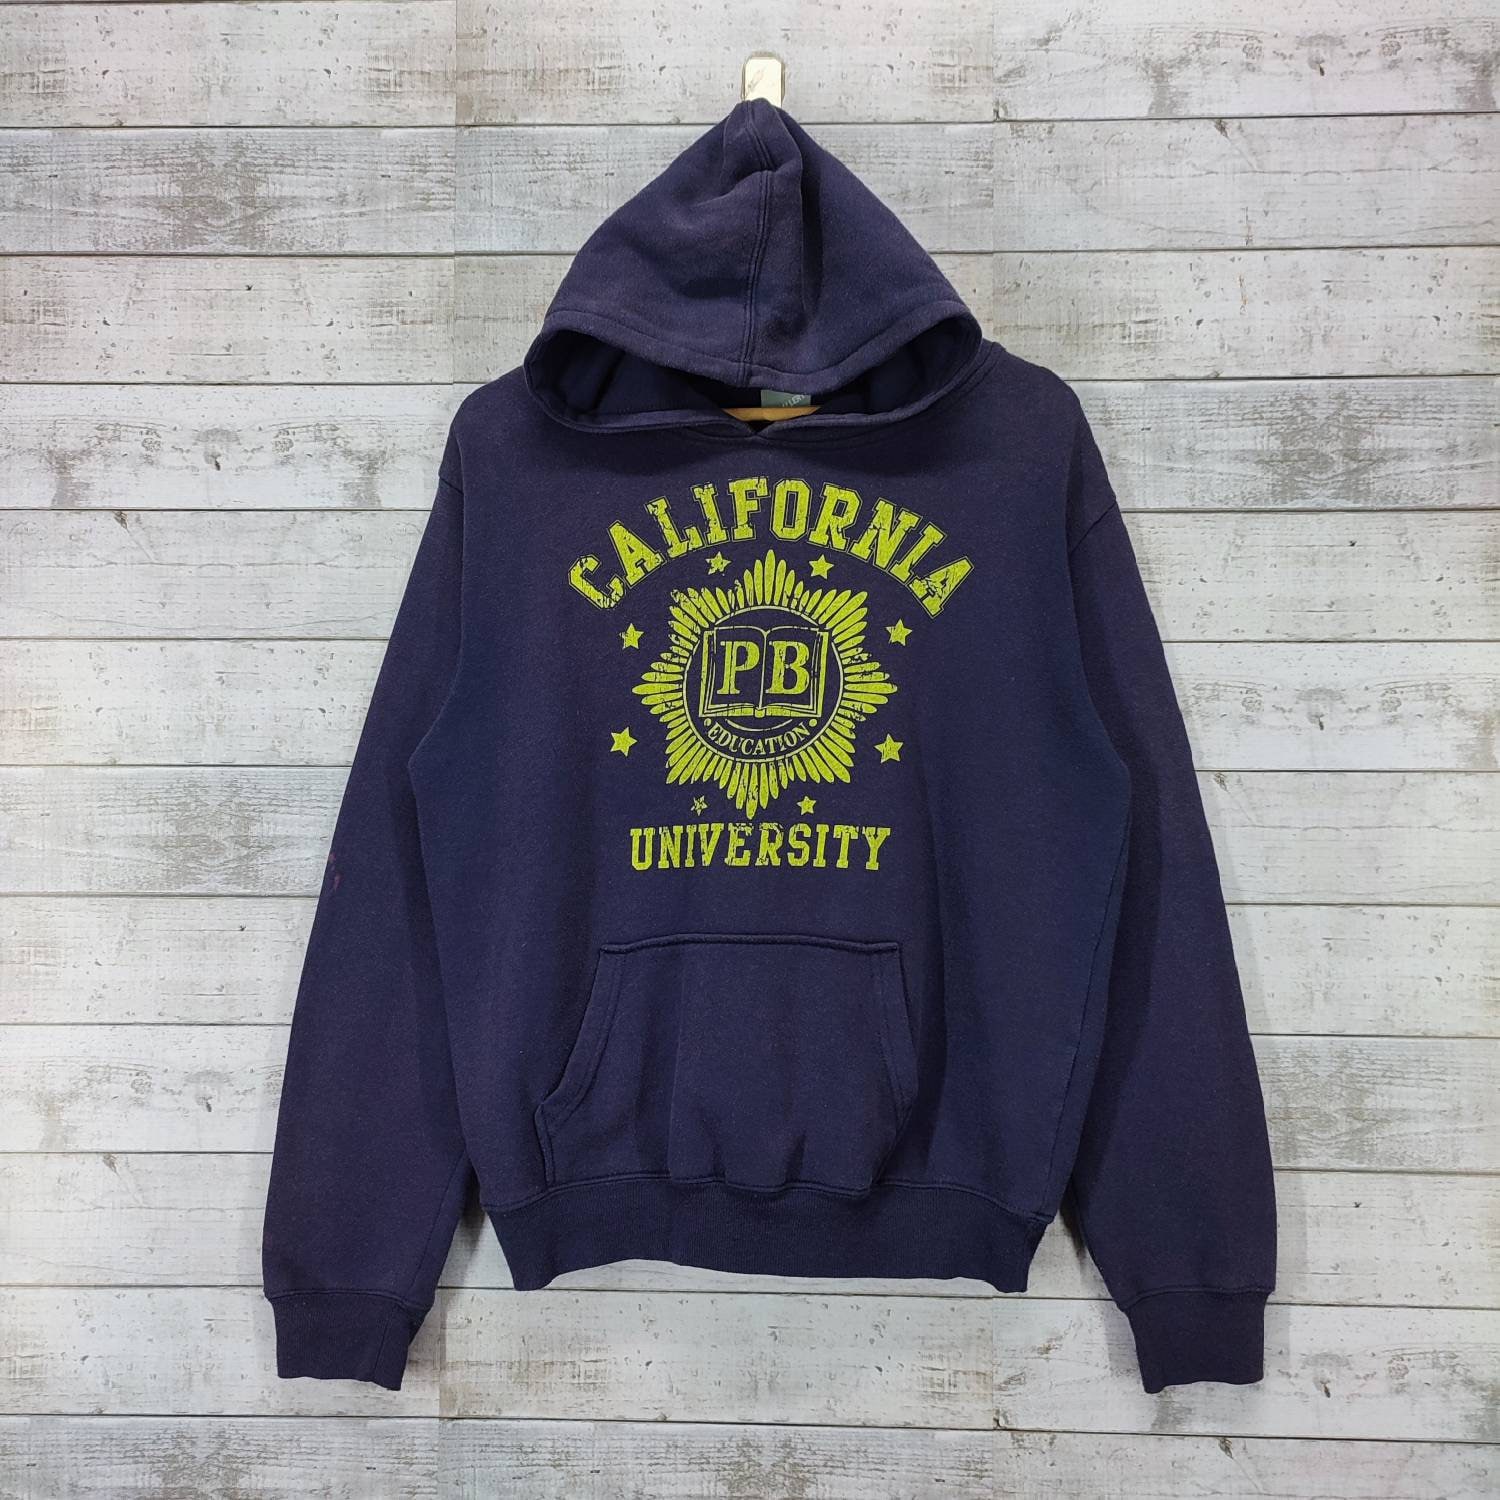 CALIFORNIA UNIVERSITY Hoodie College Sweatshirt Vintage - Etsy